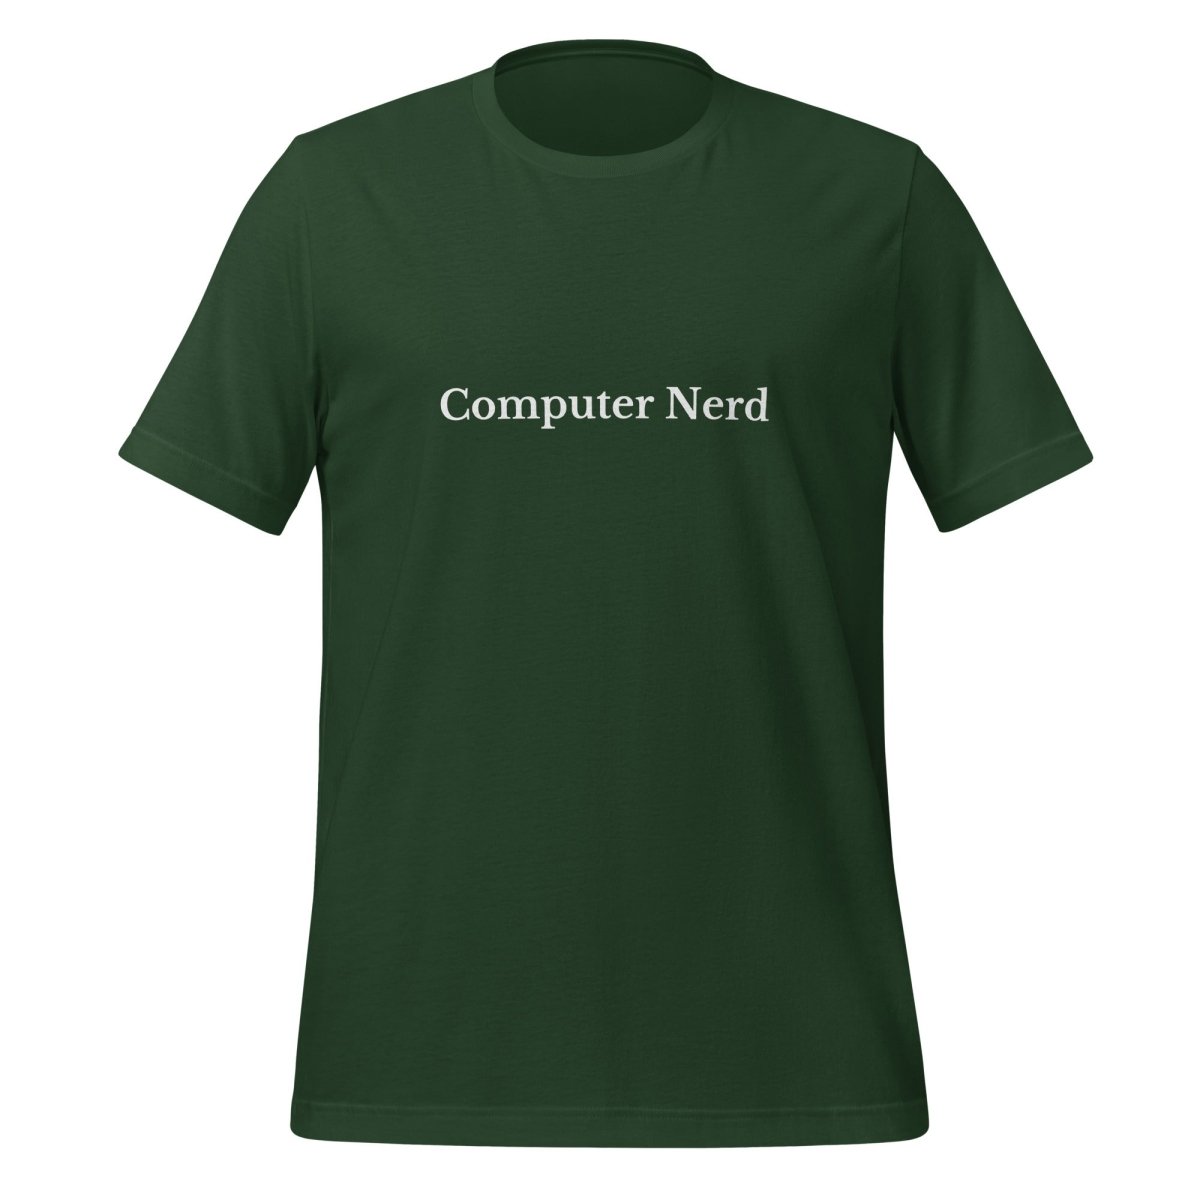 Computer Nerd T - Shirt (unisex) - Forest - AI Store